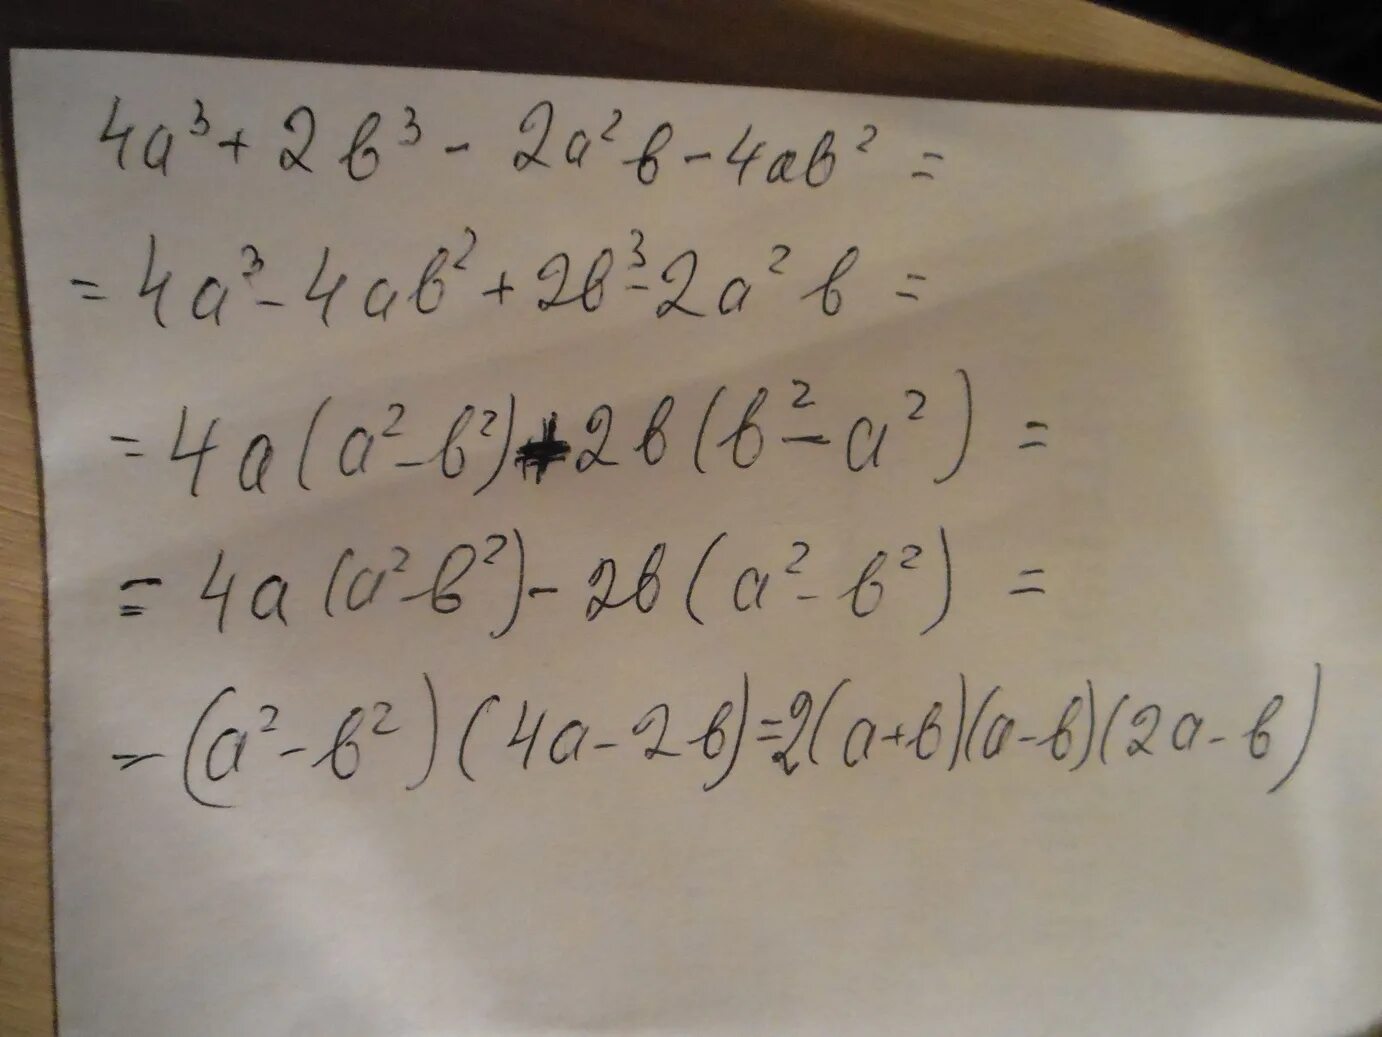 4а 1 4а 1 преобразуйте в многочлен. Разложите на множители(а+2b) (2b-a)+(a+3b) в квадрате. Разложите на множители a+b+a2-b2. A2-b2 разложить на множители. Разложите на множители:а^2-b^2-2b+2a.